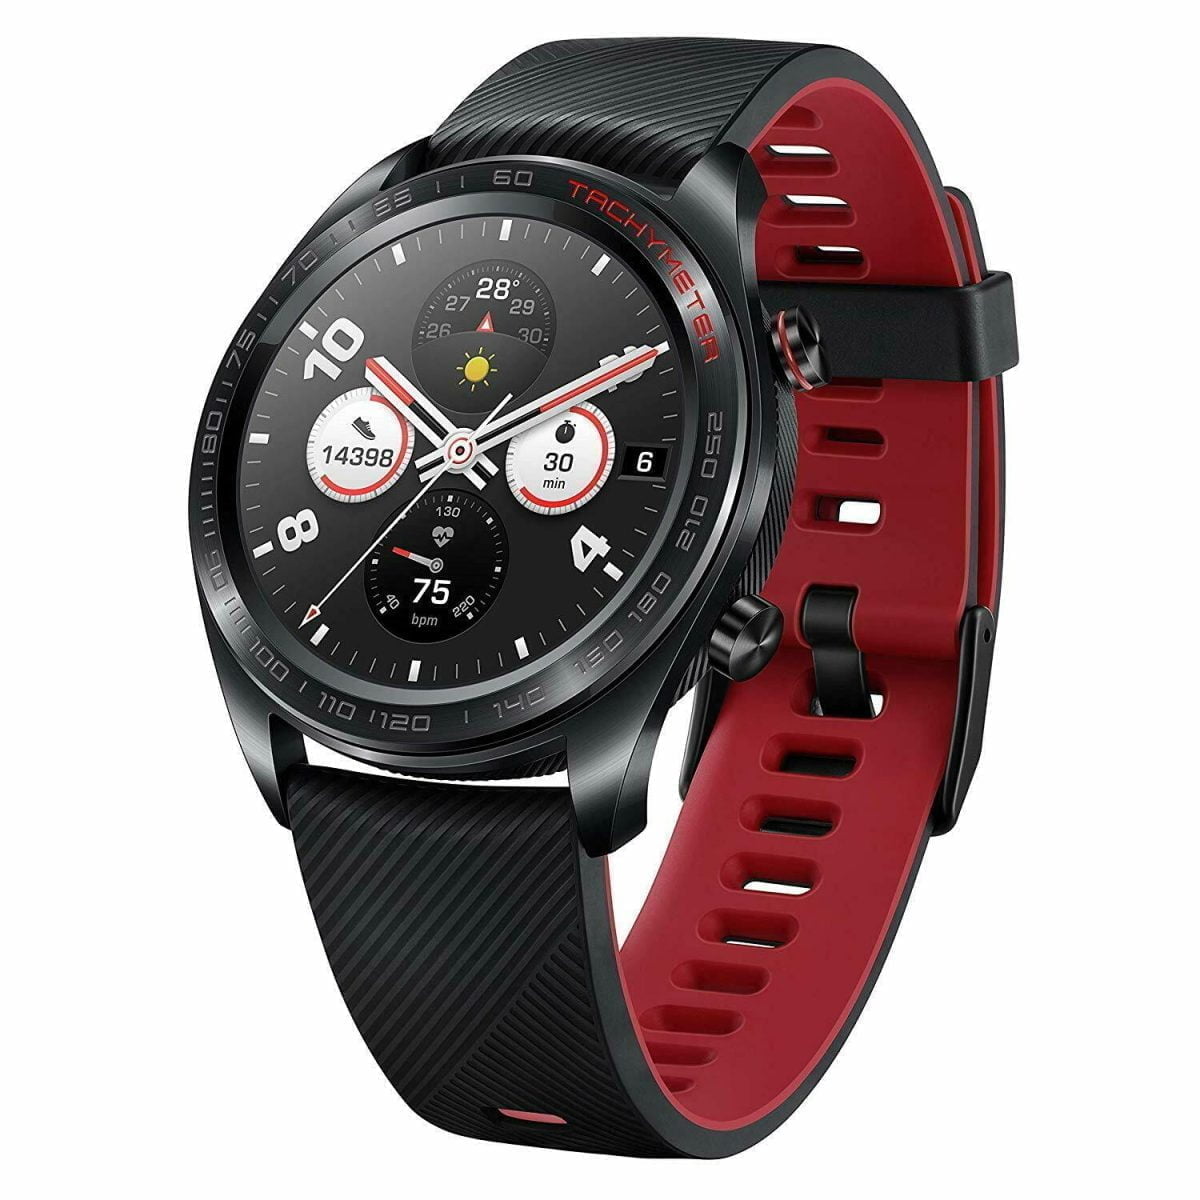 S L1600 7 هواوي &Lt;P Style=&Quot;Font-Weight: 400;&Quot;&Gt;صنعت ساعة Honor بعناية باستخدام الفولاذ المقاوم للصدأ 316L خفيف الوزن ومريح ، وهي واحدة من أنحف الساعات الذكية في السوق. تتبنى ساعة Honor Watch المصقولة بشكل مثالي التصنيع باستخدام الحاسب الآلي وأحدث النقش بالليزر لتعزيز المتانة للاستخدام اليومي. كلمسة نهائية ، فإن غلاف الساعة مصنوع من بلاستيك النايلون القابل للتحلل.&Lt;/P&Gt;
Https://Www.youtube.com/Watch?V=Ek-Byxwvj2K ساعة هونر واتش ماجيك الذكية Amoled Gps متعددة الرياضة (حزام سيليكون أسود وأحمر)